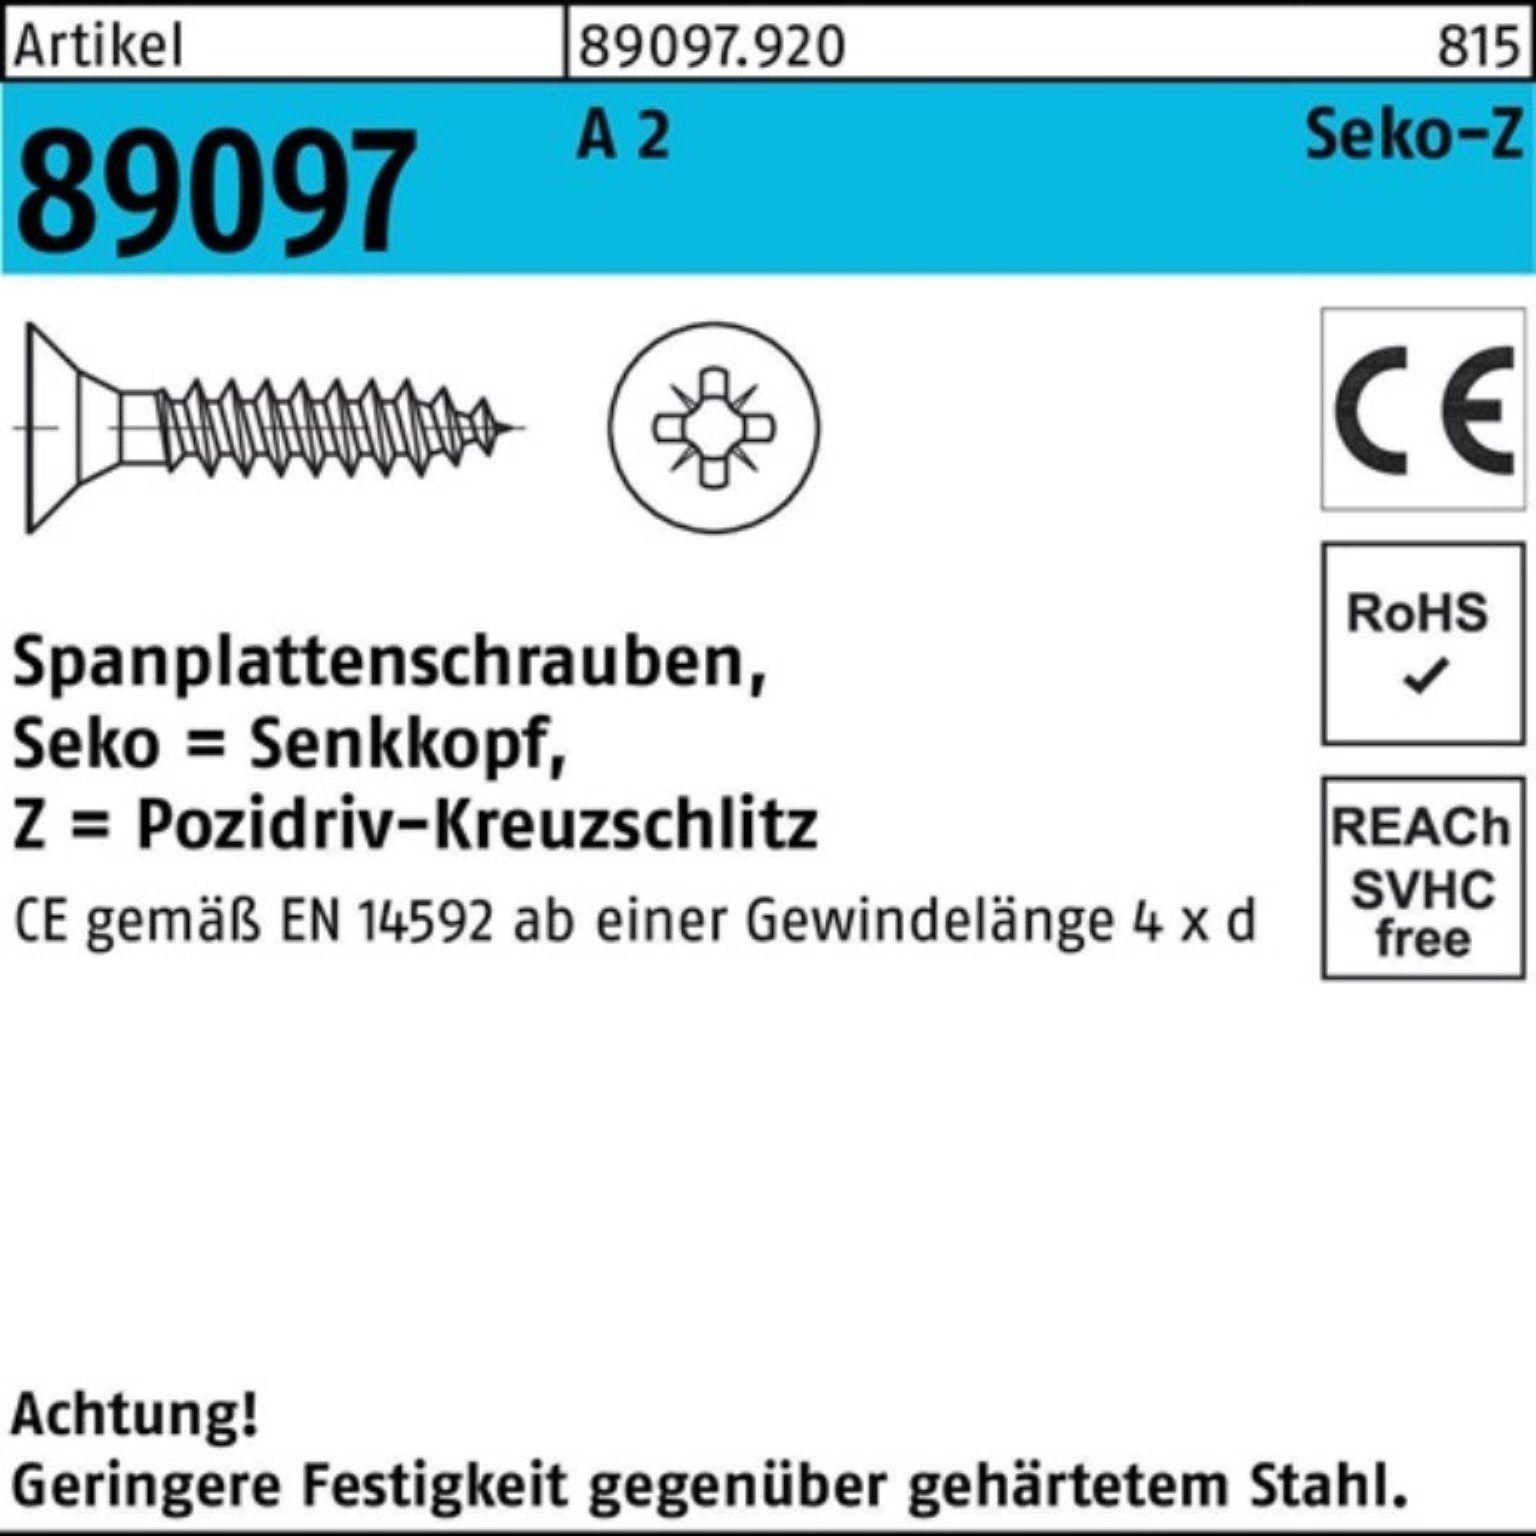 Pack SEKO 200er 2 Stü Spanplattenschraube PZ 6x VG Spanplattenschraube 80-Z 89097 A R 200 Reyher